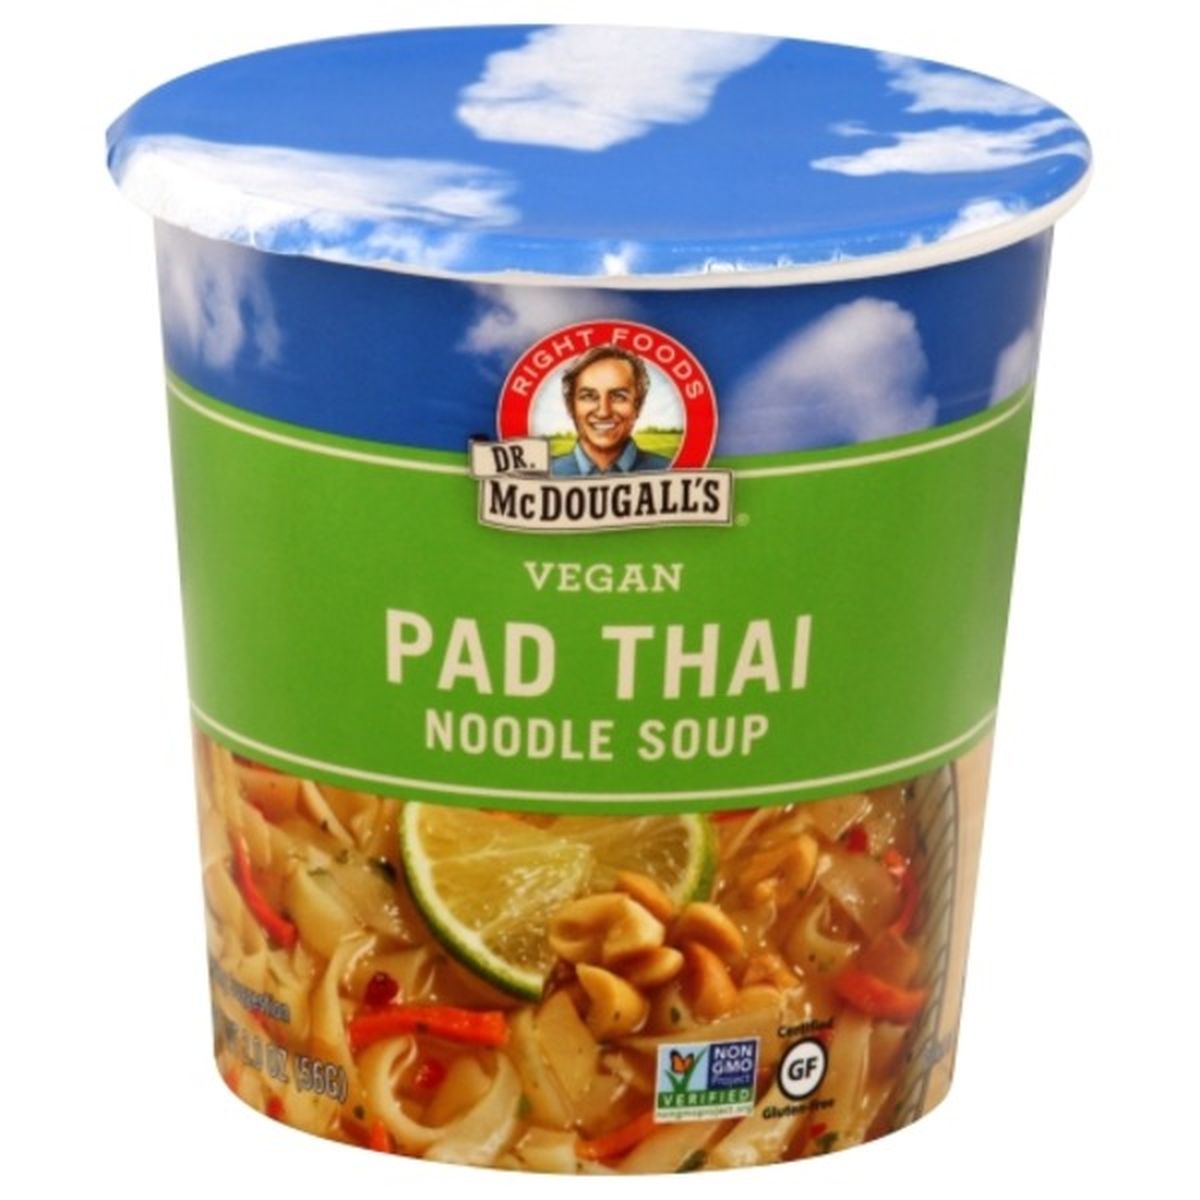 Calories in Dr. McDougall's Noodle Soup, Vegan, Pad Thai